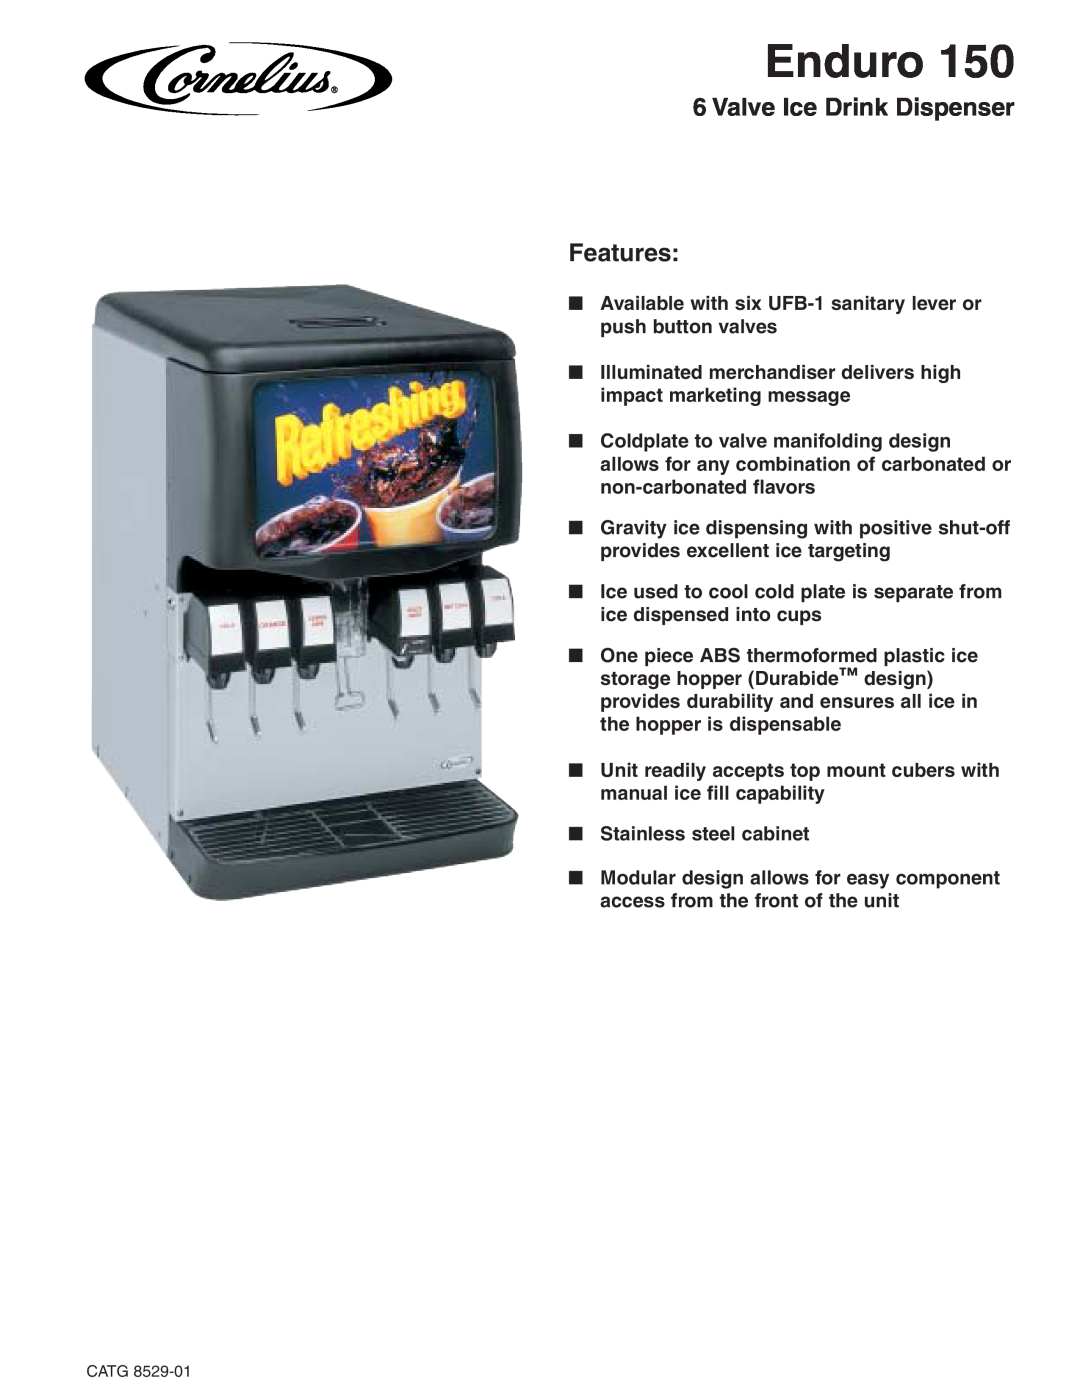 Cornelius 150 manual Enduro, Valve Ice Drink Dispenser Features 